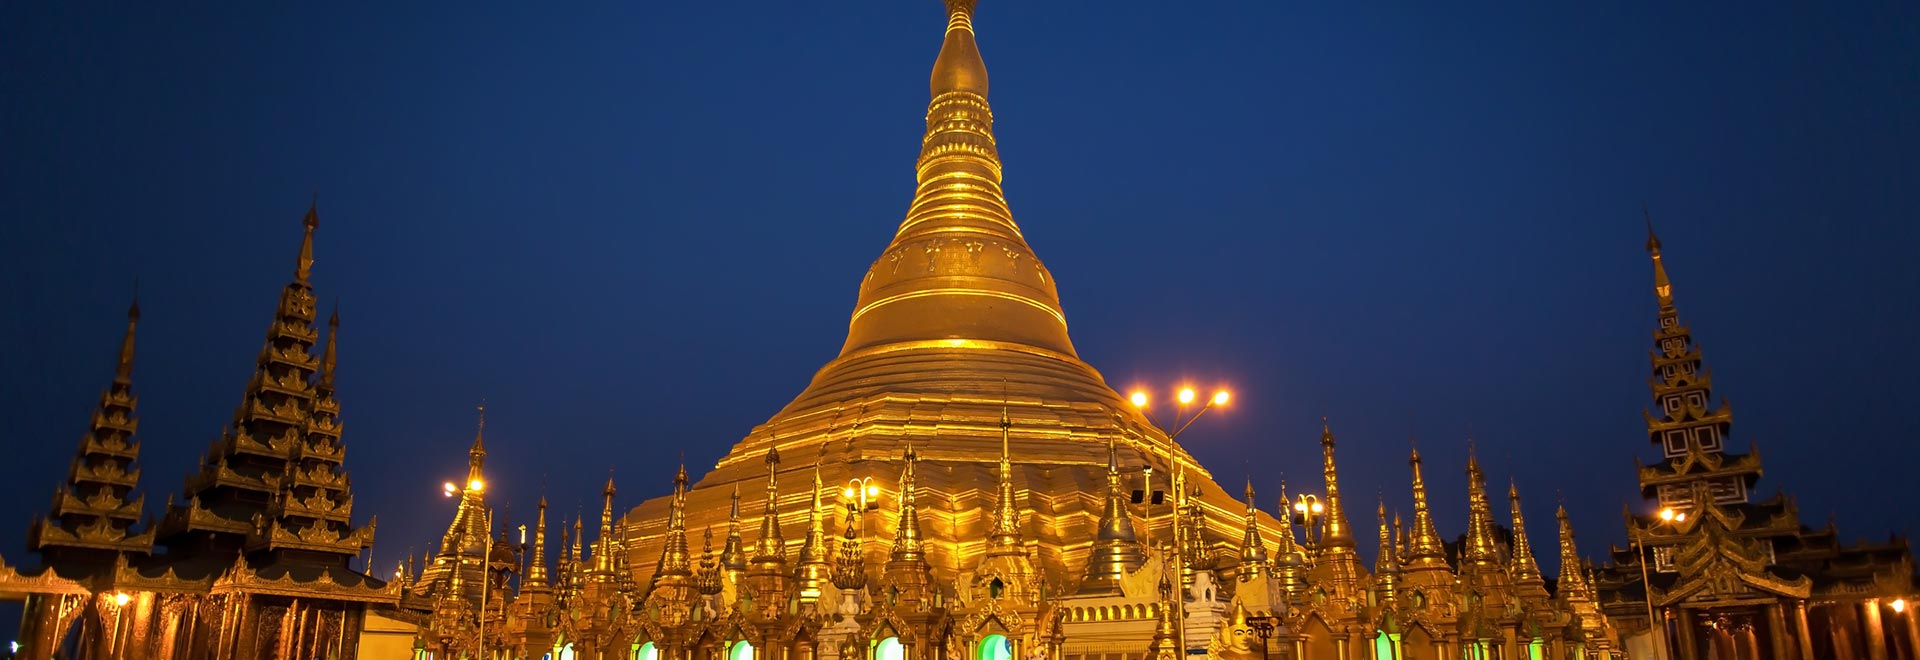 Southeast Asia Myanmar Shwedagon Pagoda